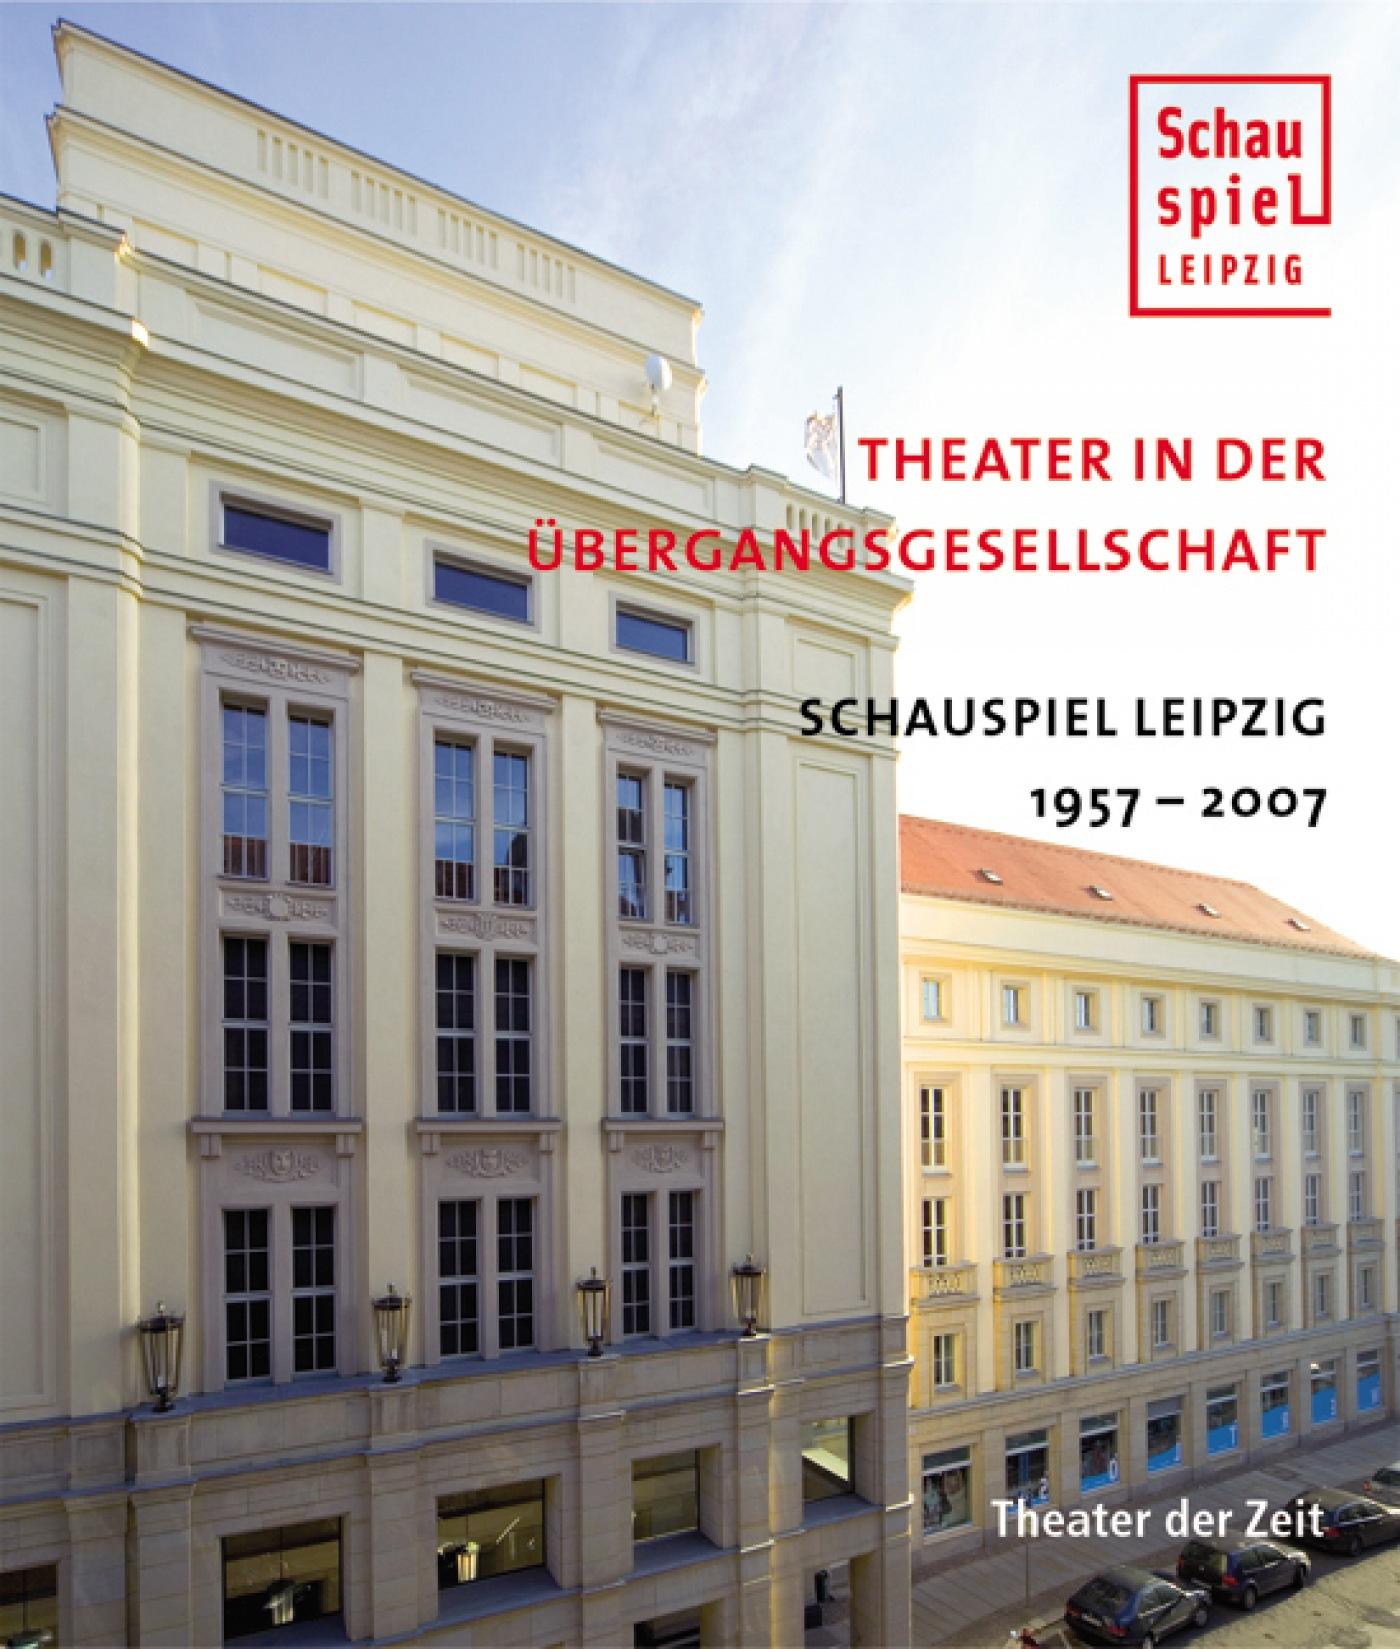 "Theater in der Übergangsgesellschaft"